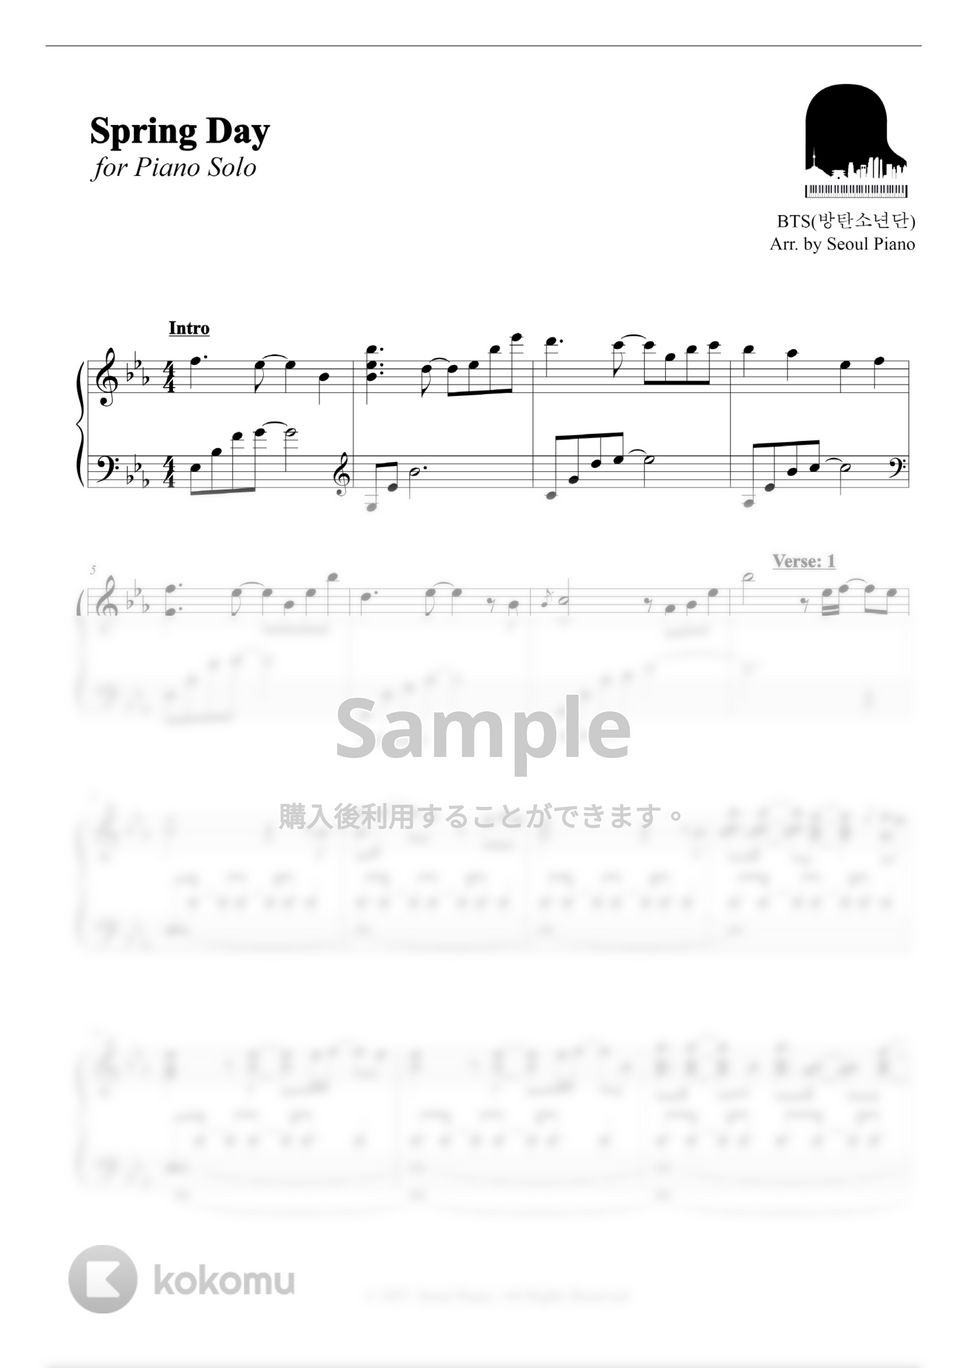 防弾少年団 (BTS) - 春の日(봄날) by Seoul Piano